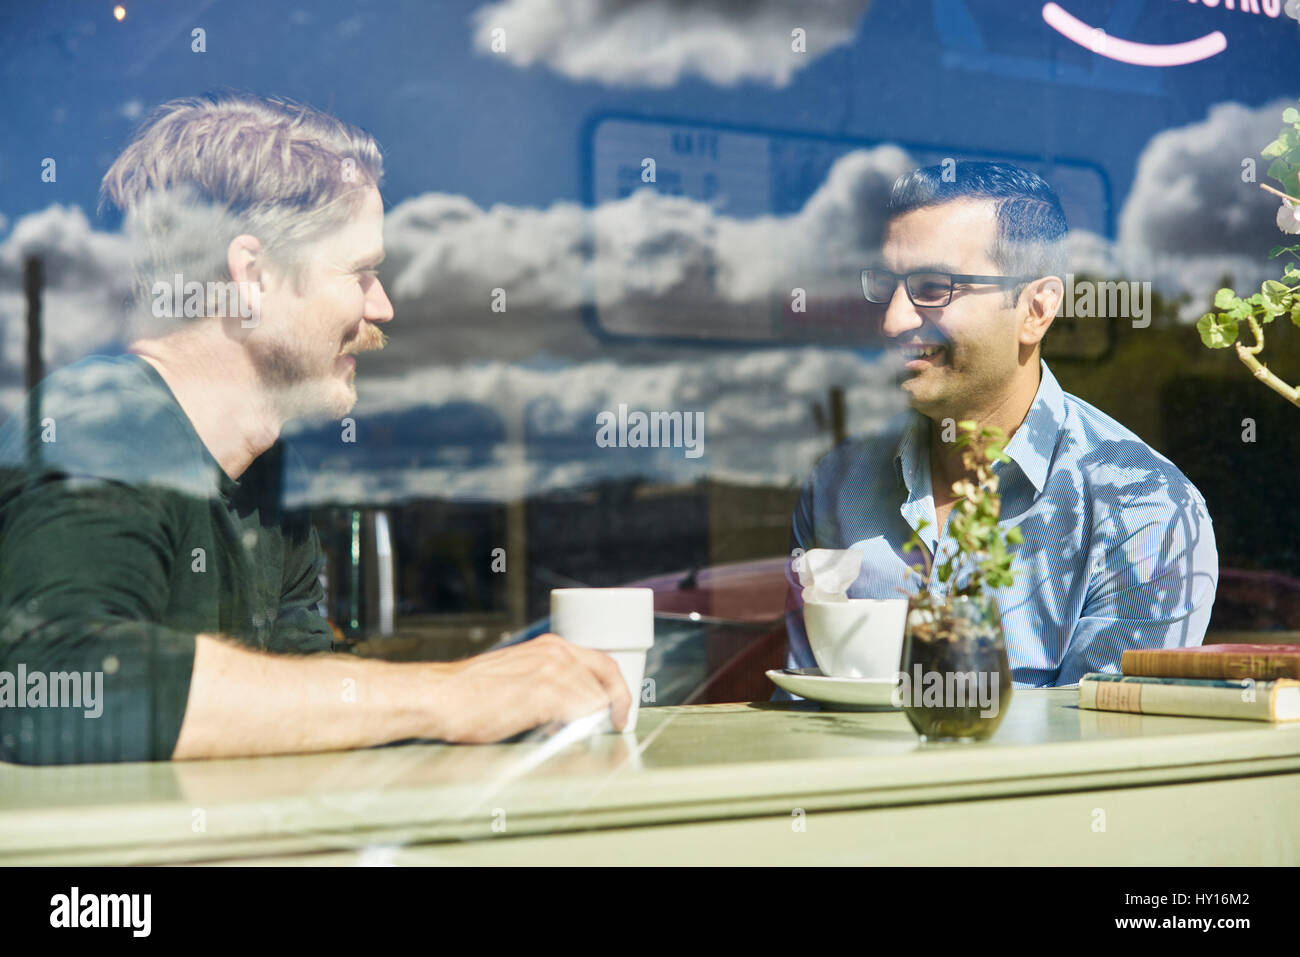 La Suède, Portrait de deux hommes adultes dans cafe Banque D'Images